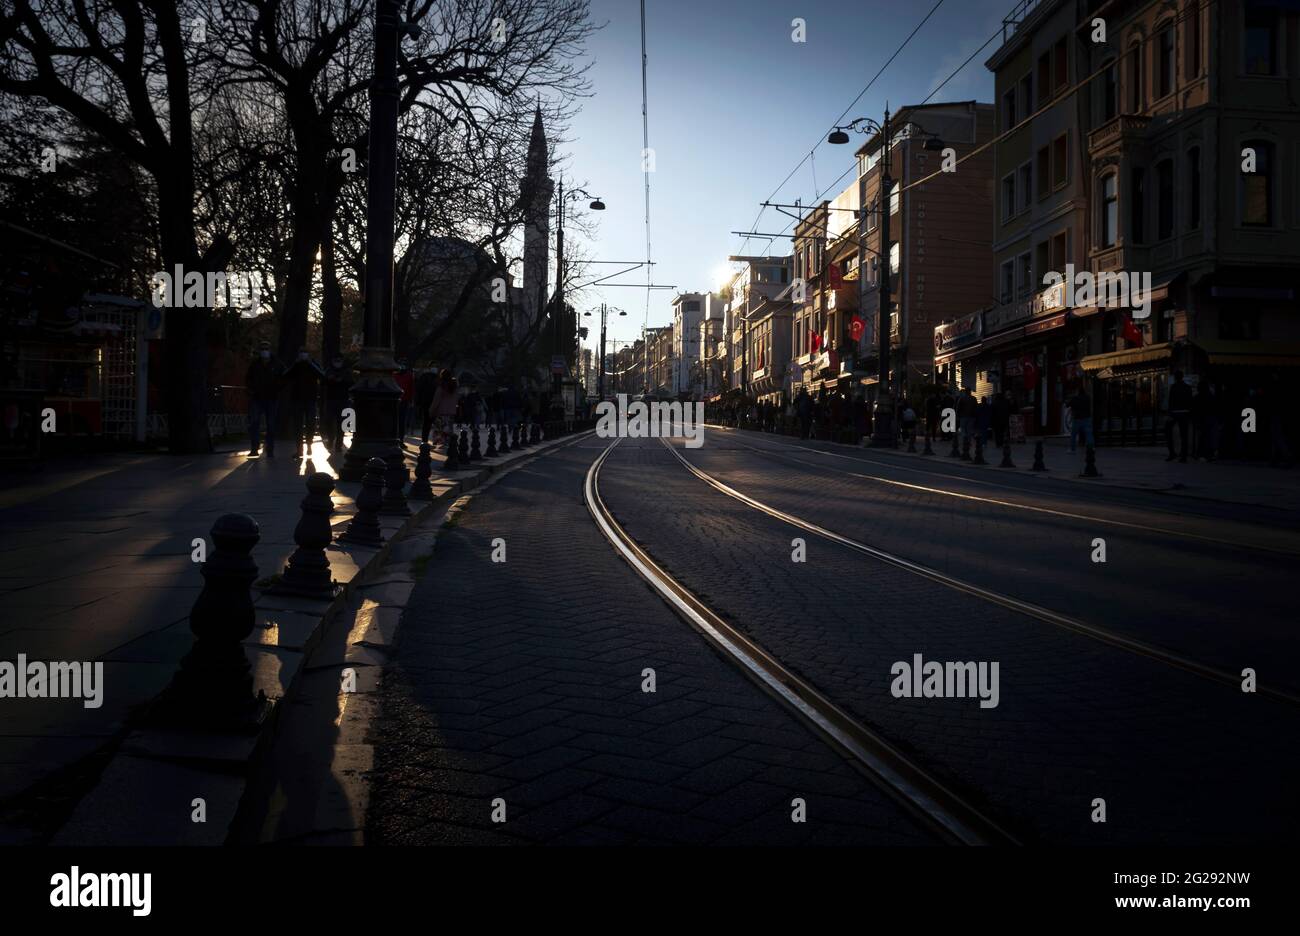 Sultanahmet, Estambul, Turquía 27th de marzo de 2021: La línea de tranvía de la calle se extiende desde Sultanahmet a Cemberlitas a través de Via Egnatia aka Divan Yolu Foto de stock